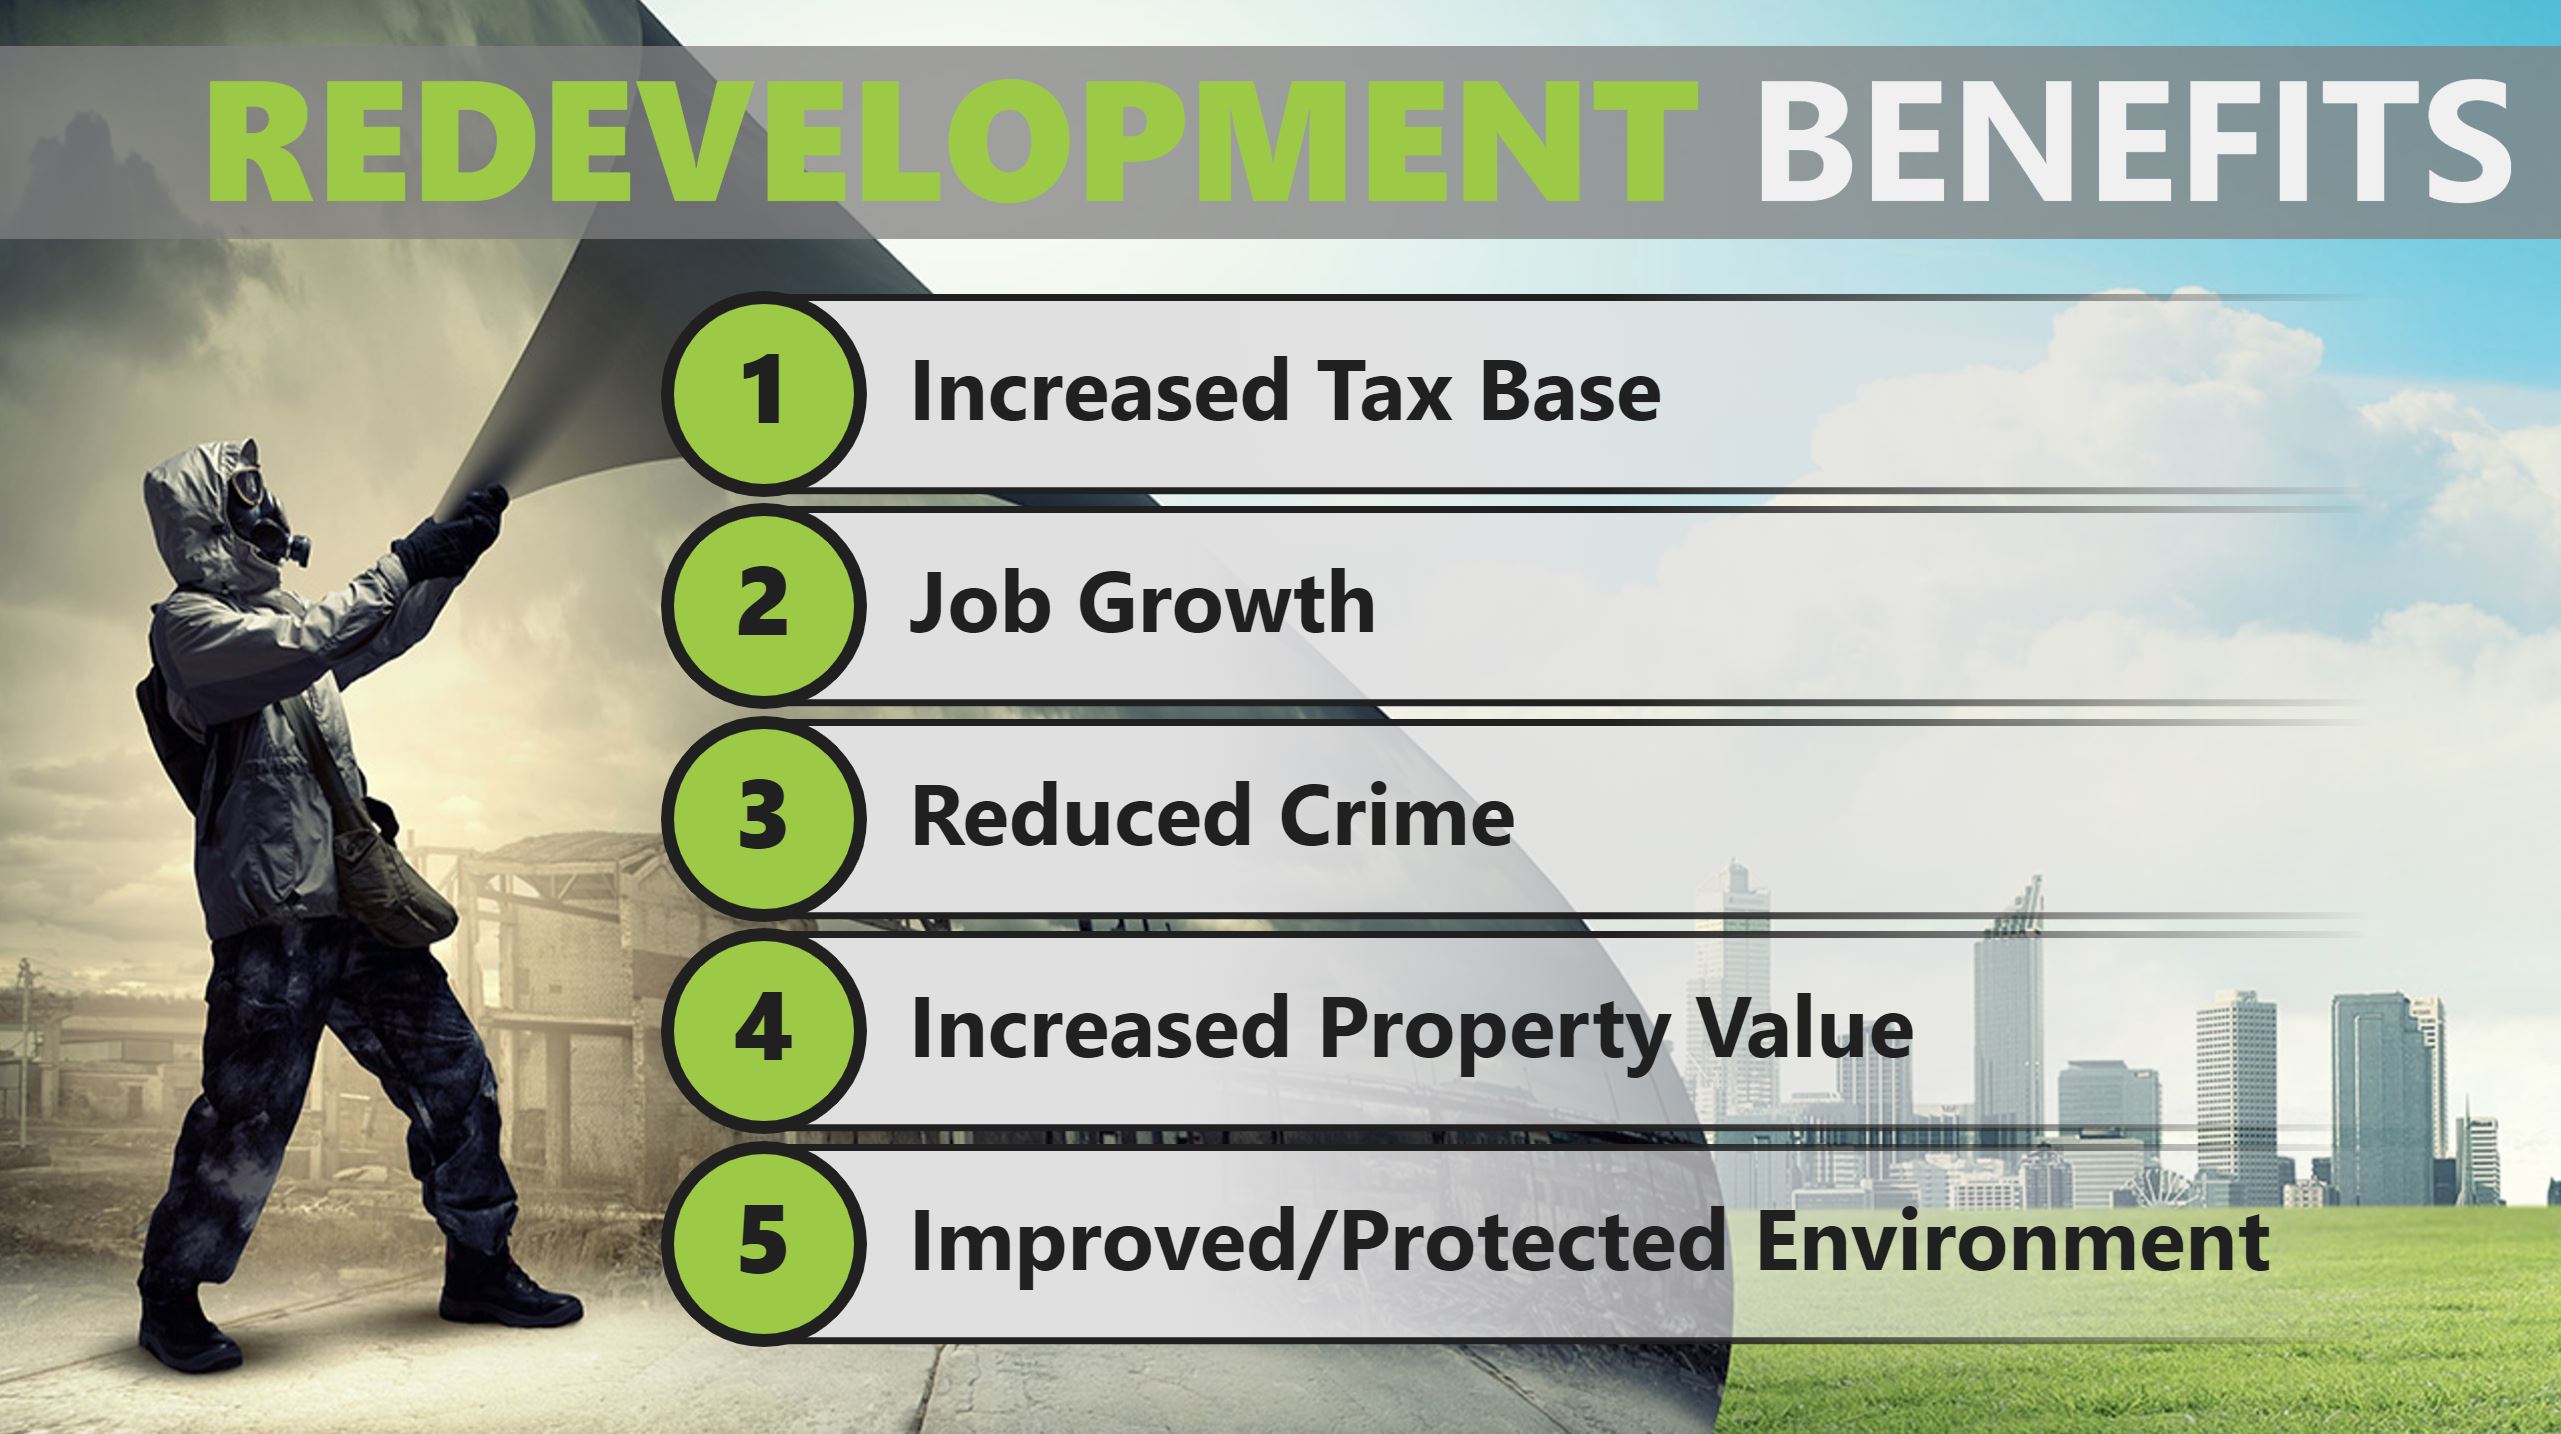 Brownfield Redevelopment Benefits List